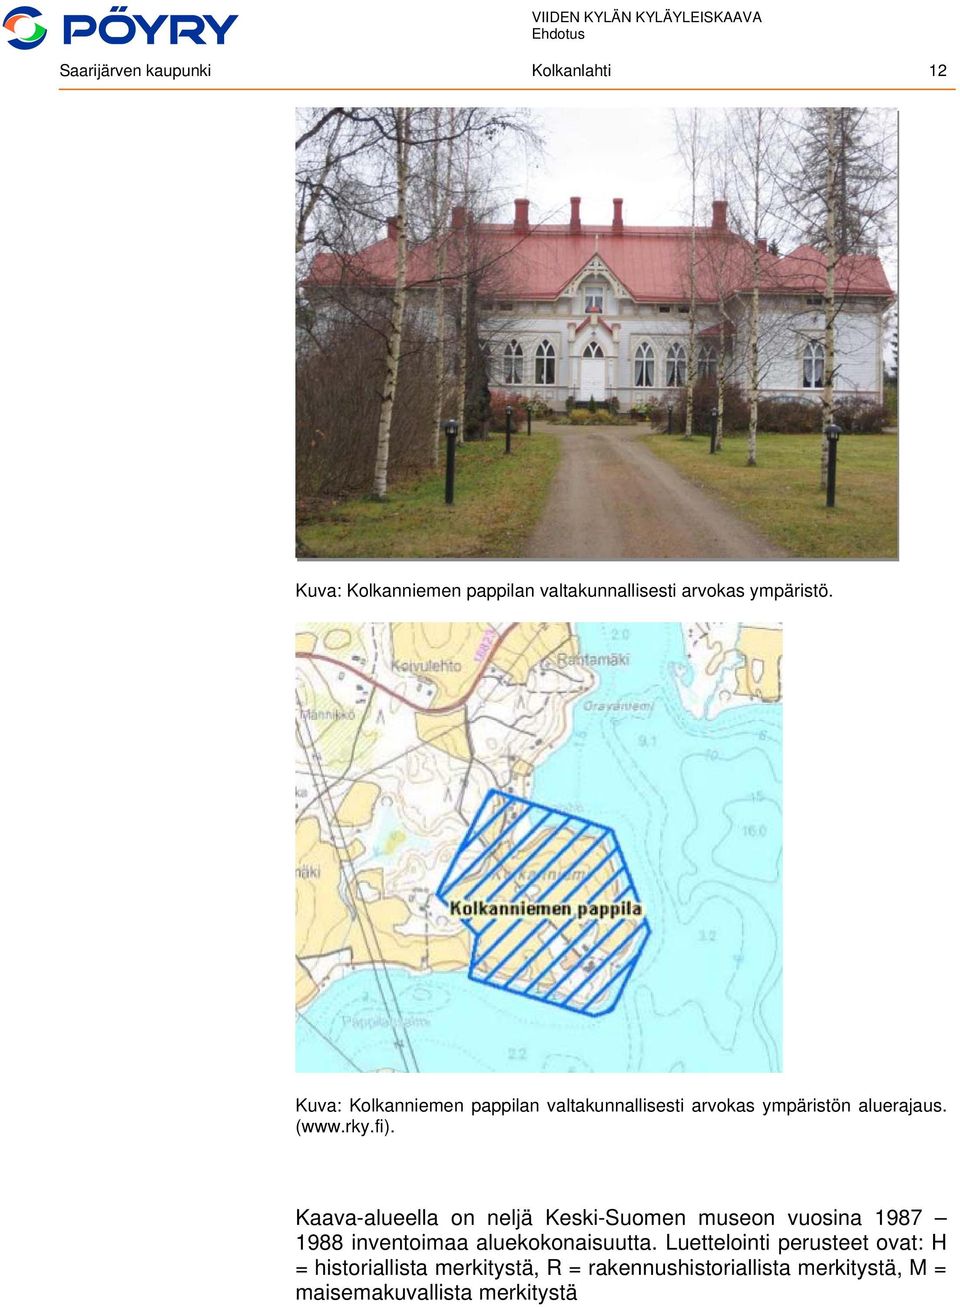 Kaava-alueella on neljä Keski-Suomen museon vuosina 1987 1988 inventoimaa aluekokonaisuutta.